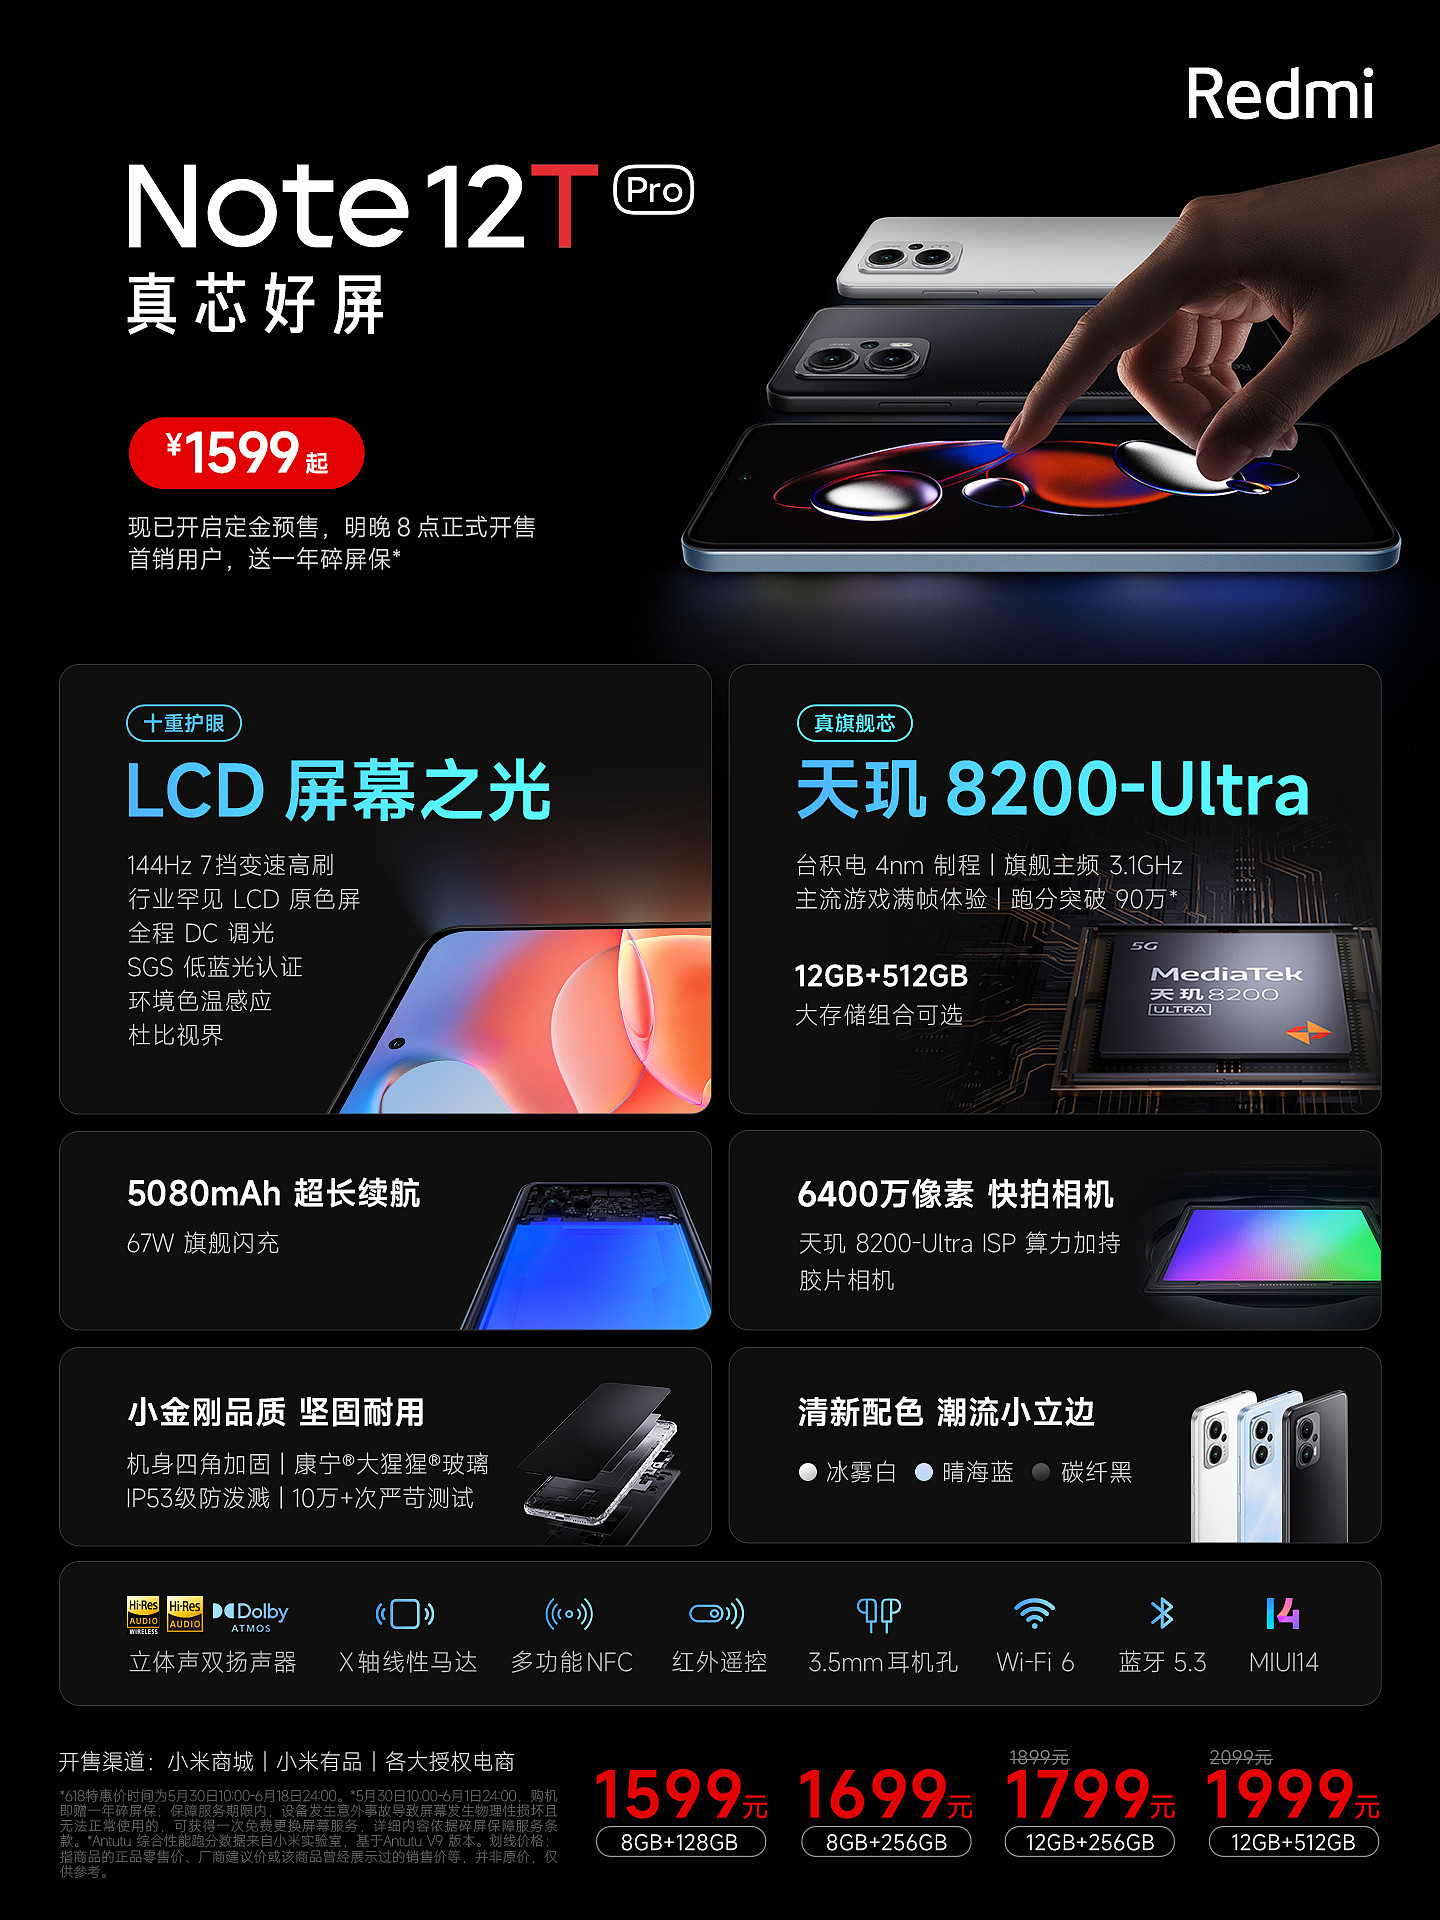 首销直降 200 元 + 赠碎屏险：Redmi Note 12T Pro 手机预售开启 - 1